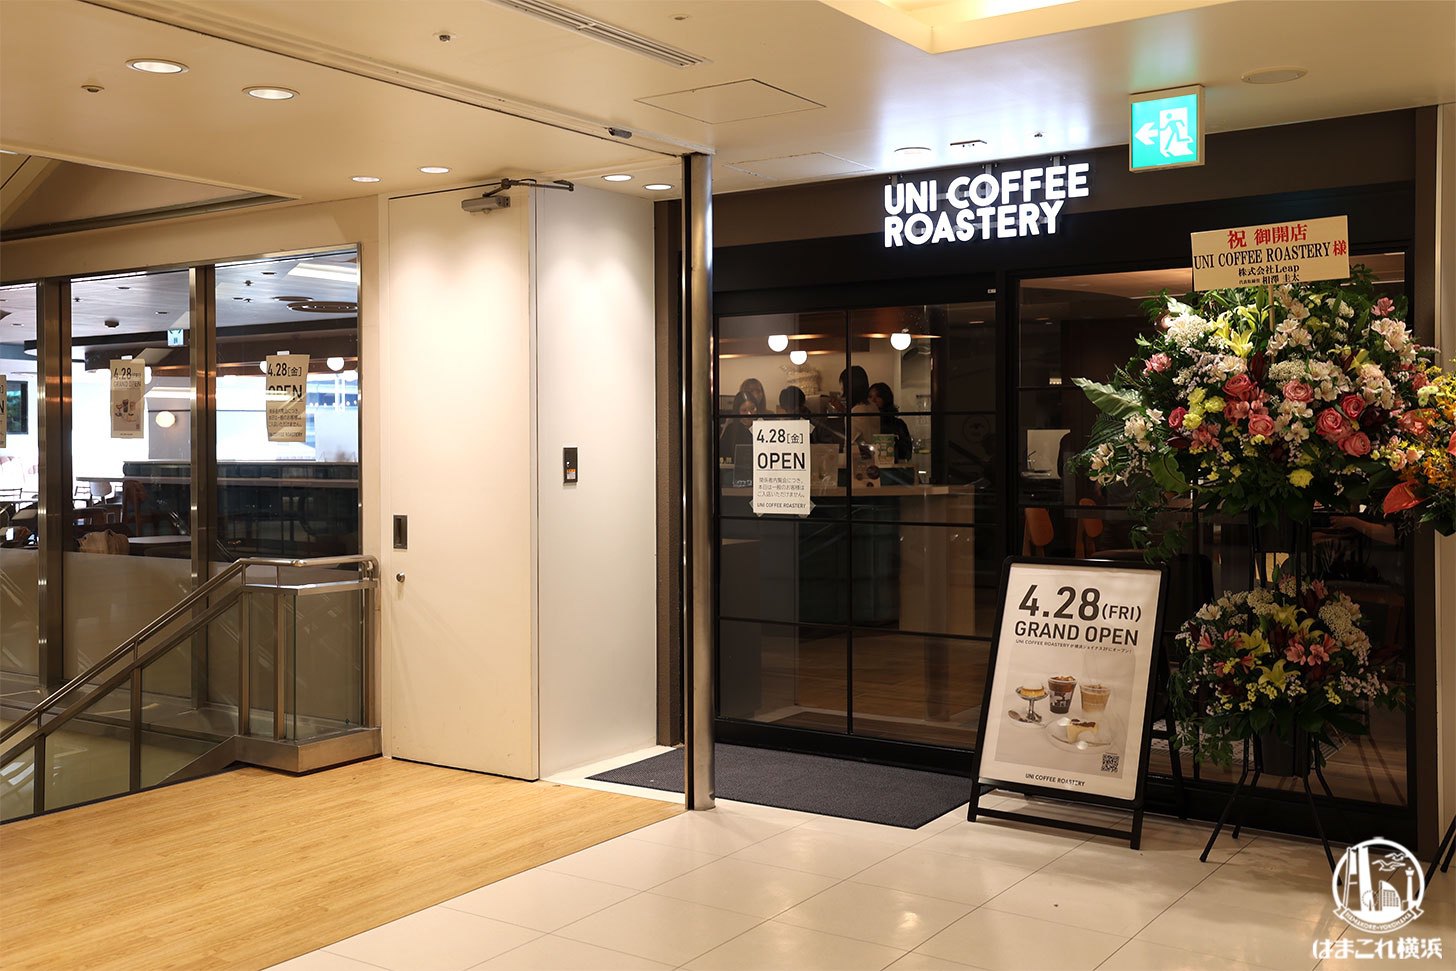 ユニコーヒーロースタリー 横浜ジョイナス店 入口・外観